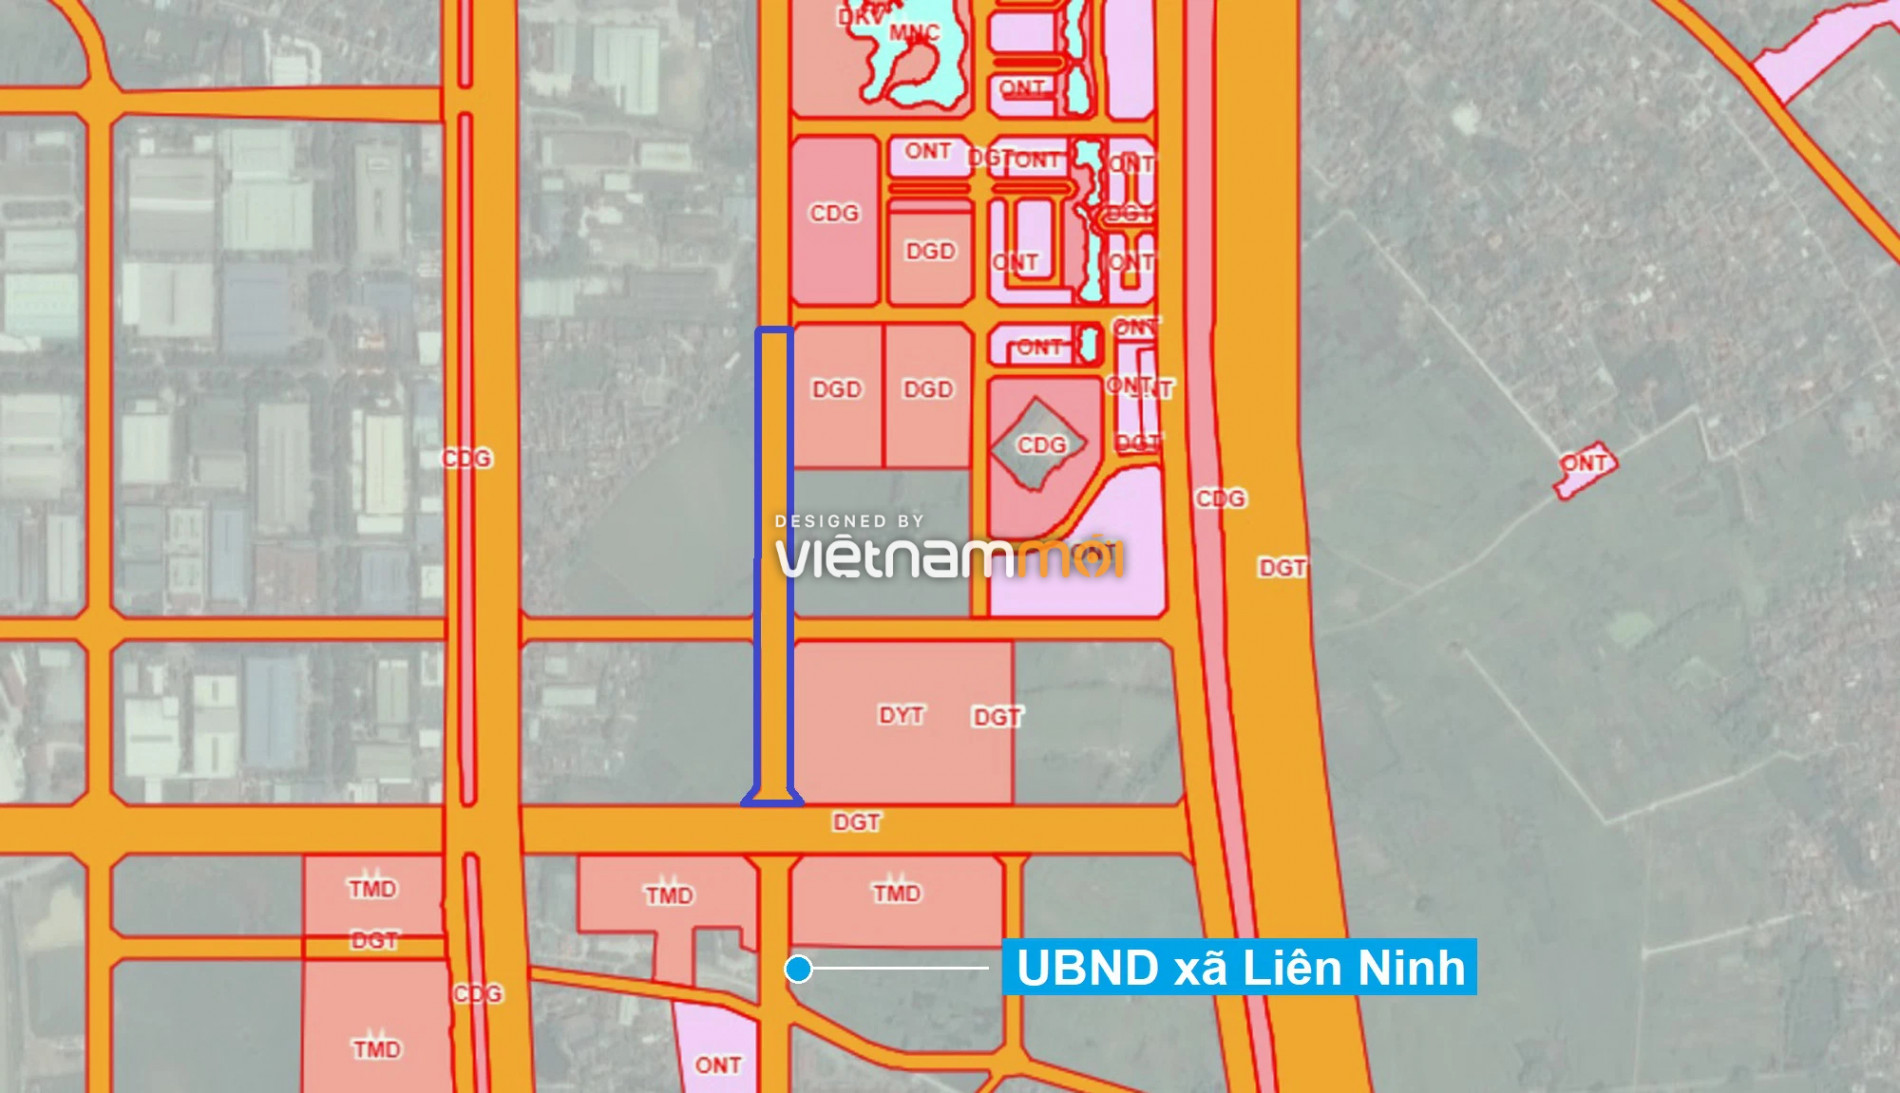  Những khu đất sắp thu hồi để mở đường ở xã Liên Ninh, Thanh Trì, Hà Nội (phần 6) - Ảnh 1.